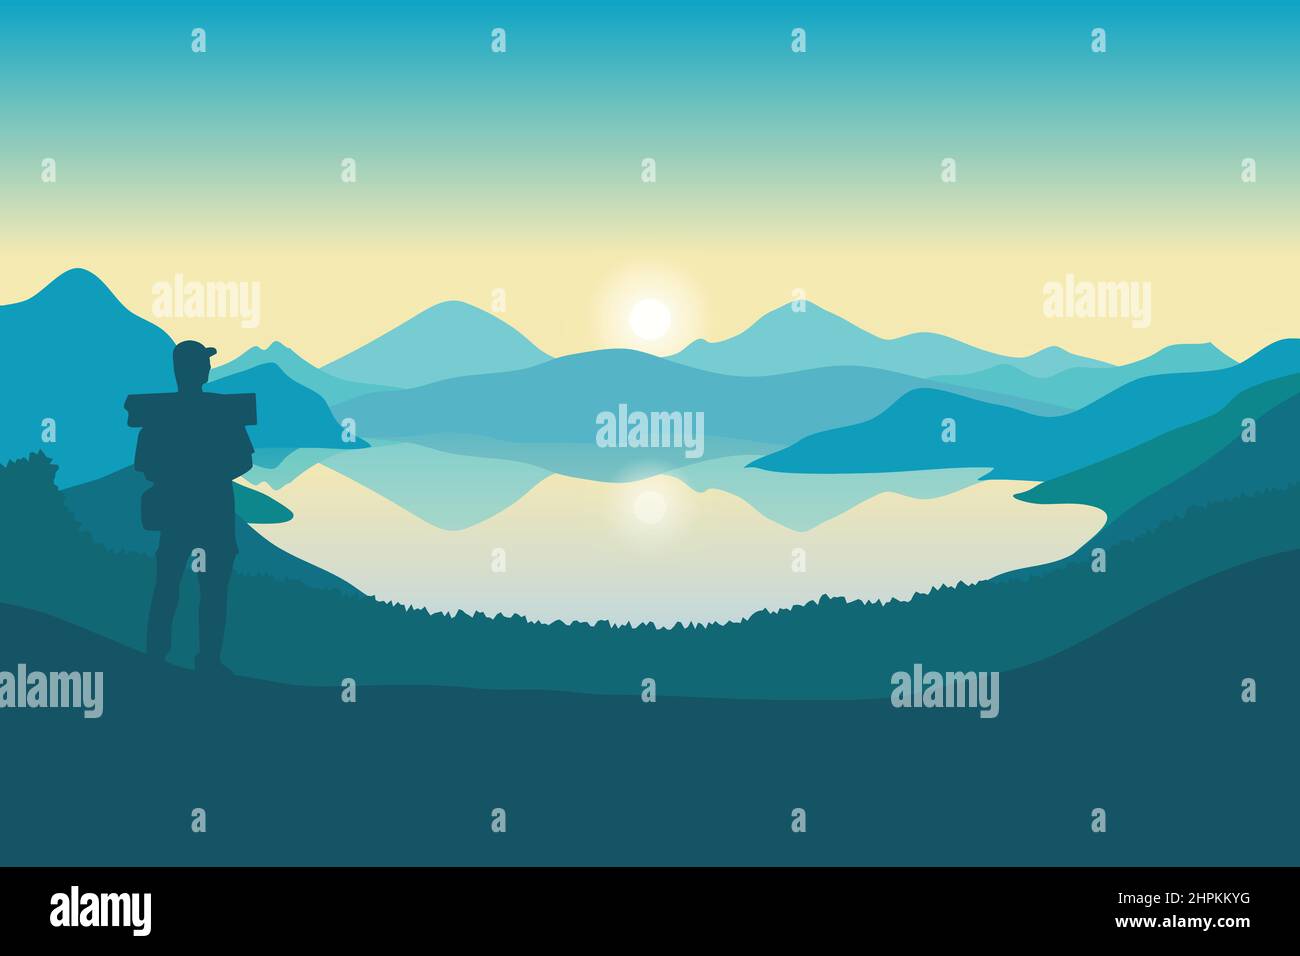 Paesaggio di montagna e illustrazione vettoriale del lago, silhouette di un uomo in piedi guardando il paesaggio naturale all'alba Illustrazione Vettoriale